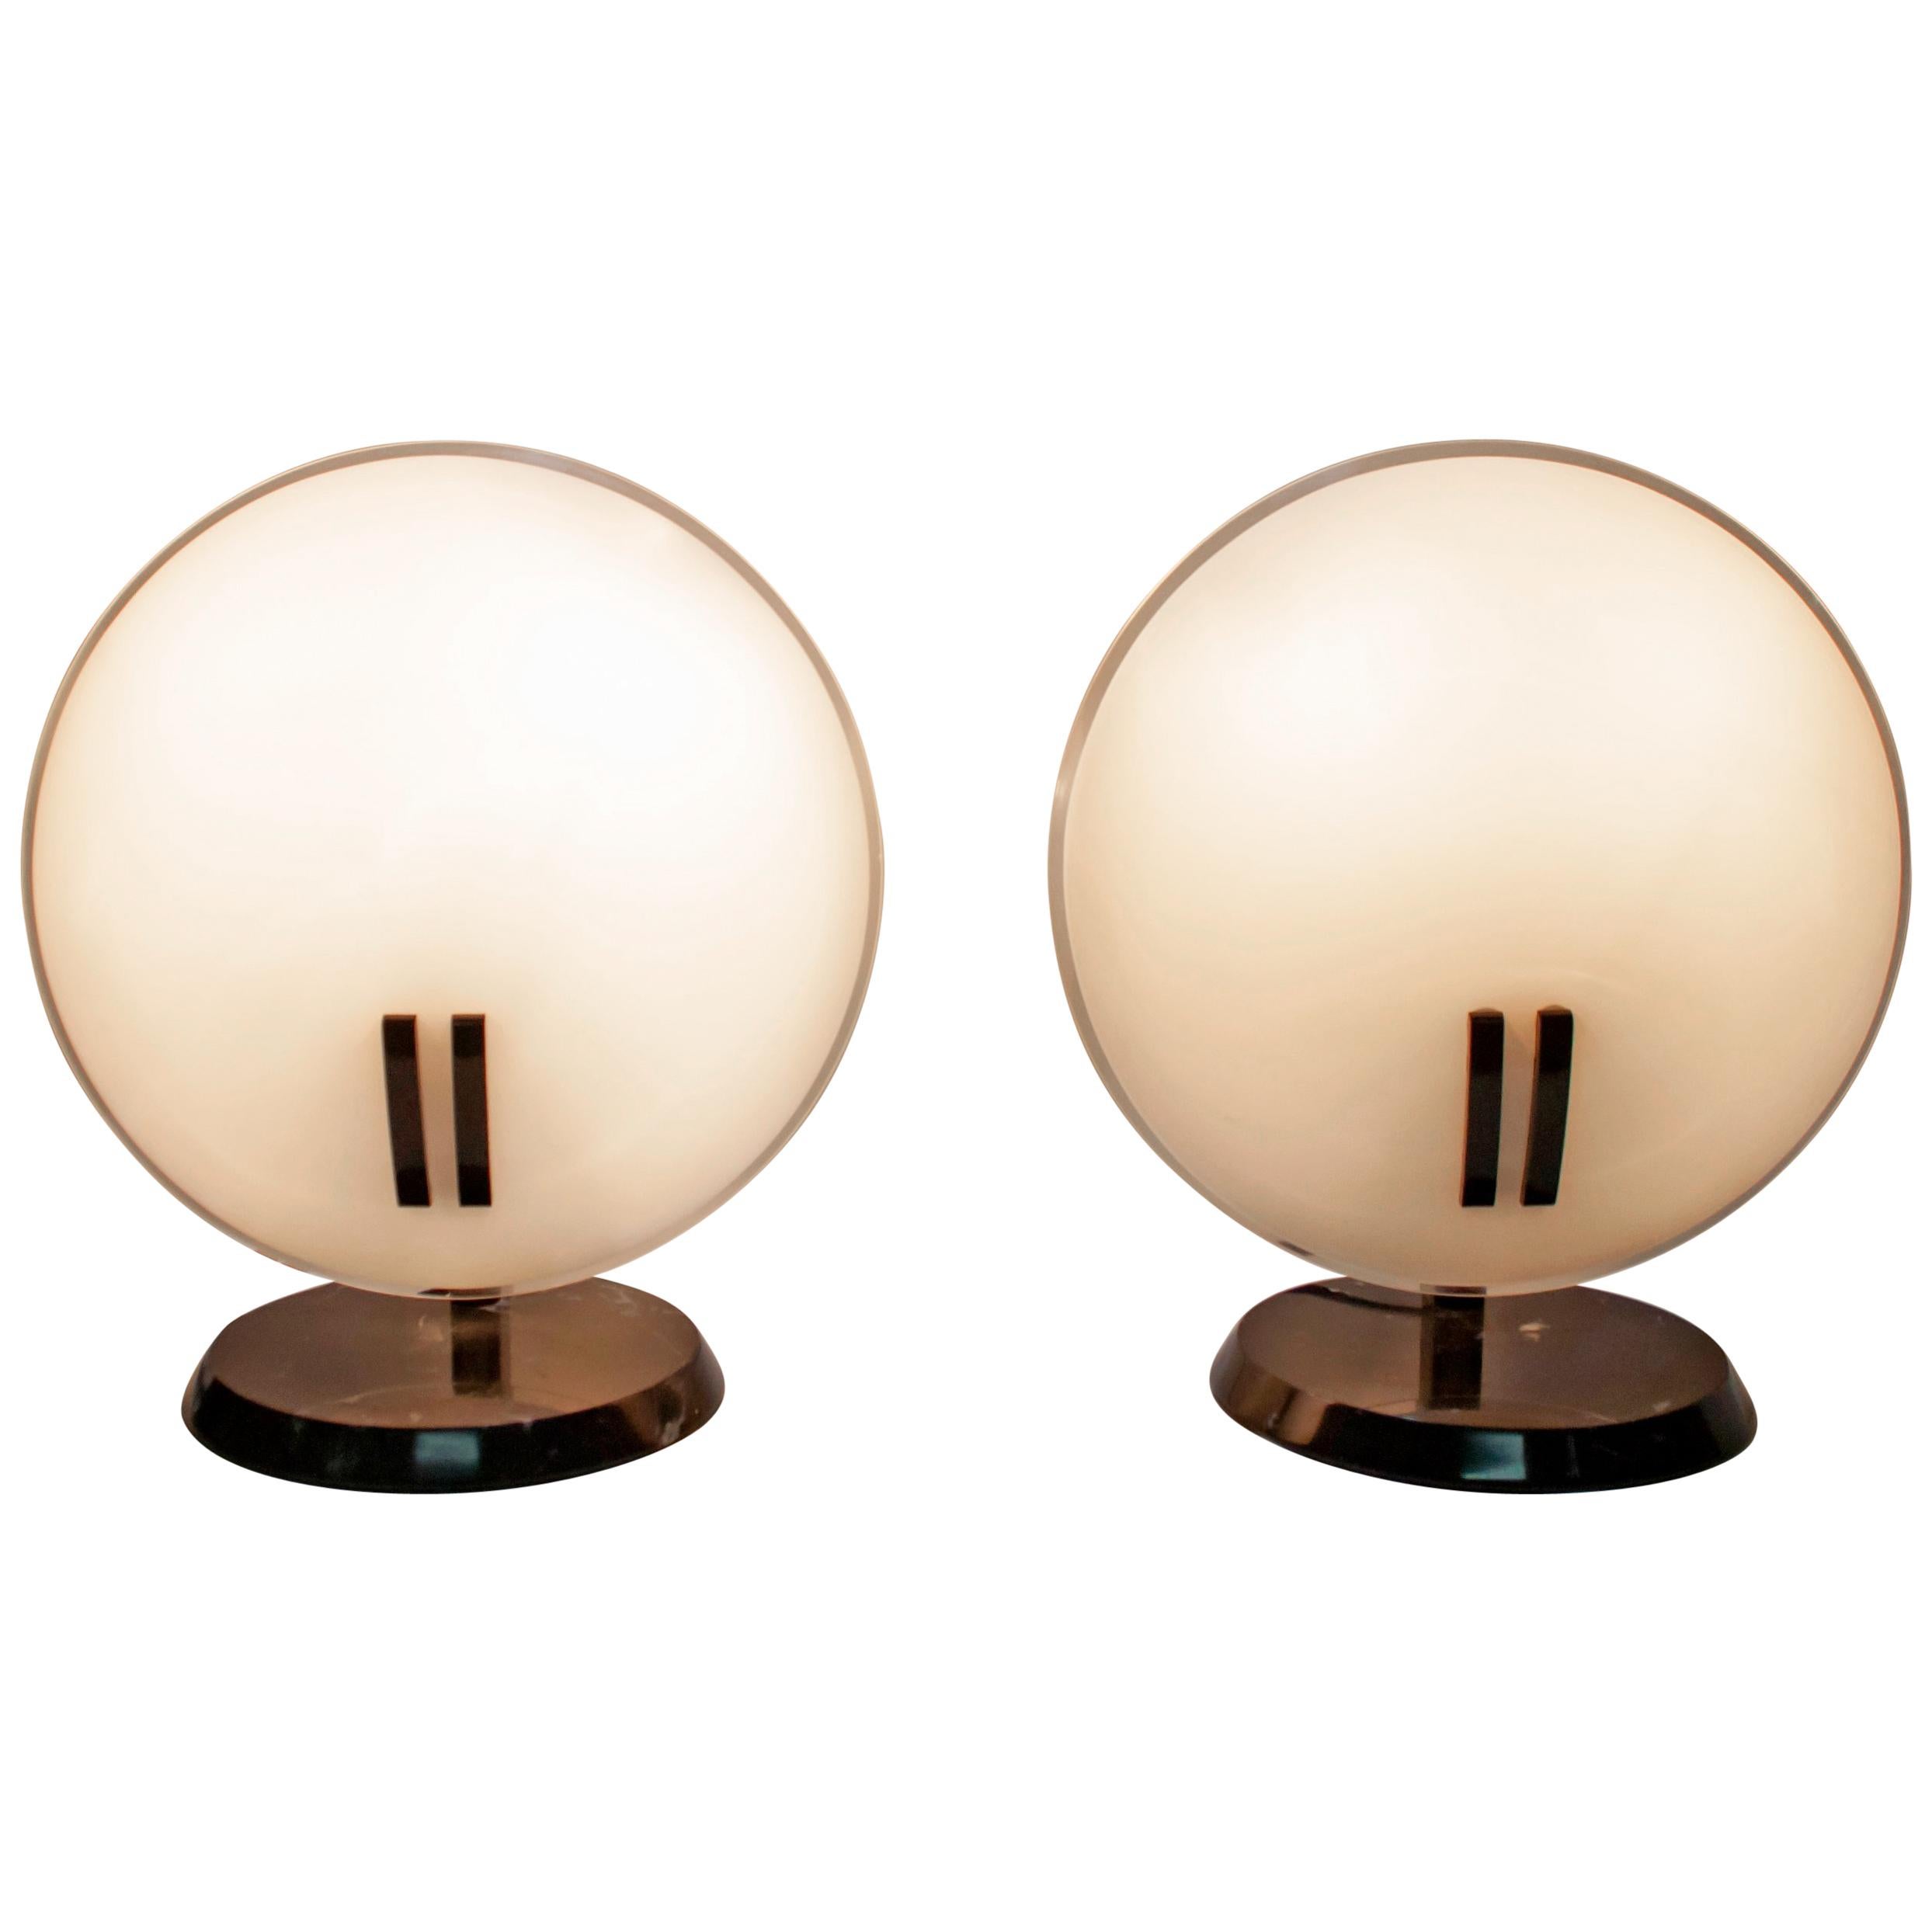 Pair of Bruno Gecchelin Italian Table Lamps "Perla" for Oluce, 1980s